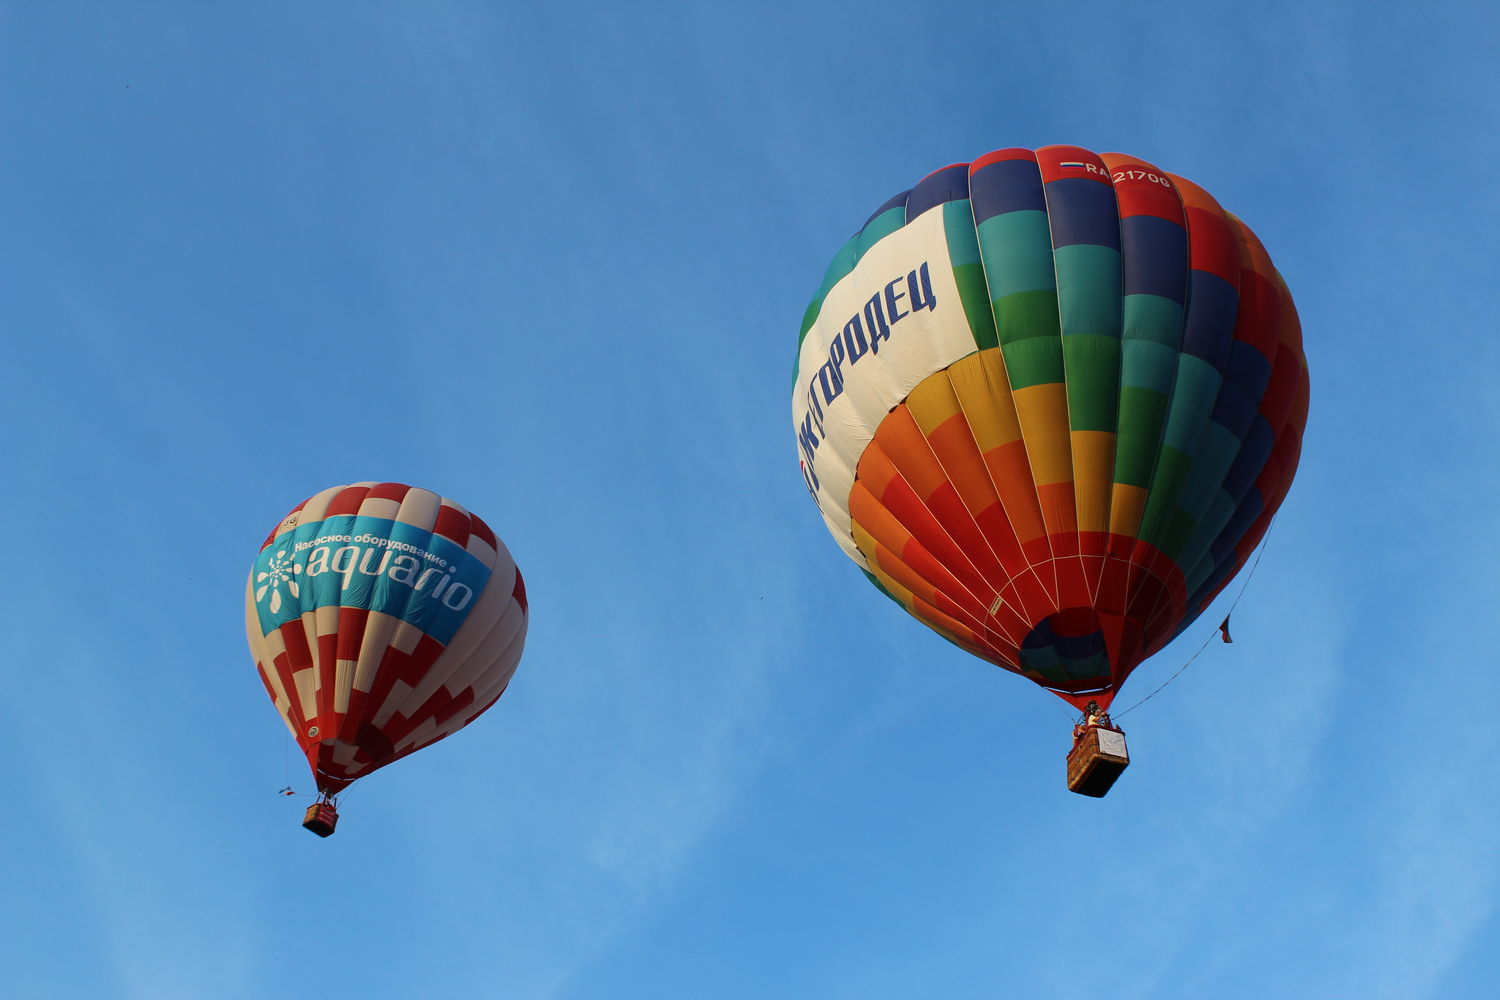 Фиеста воздушных шаров возрождается в Нижнем Новгороде (ФОТО) - фото 1